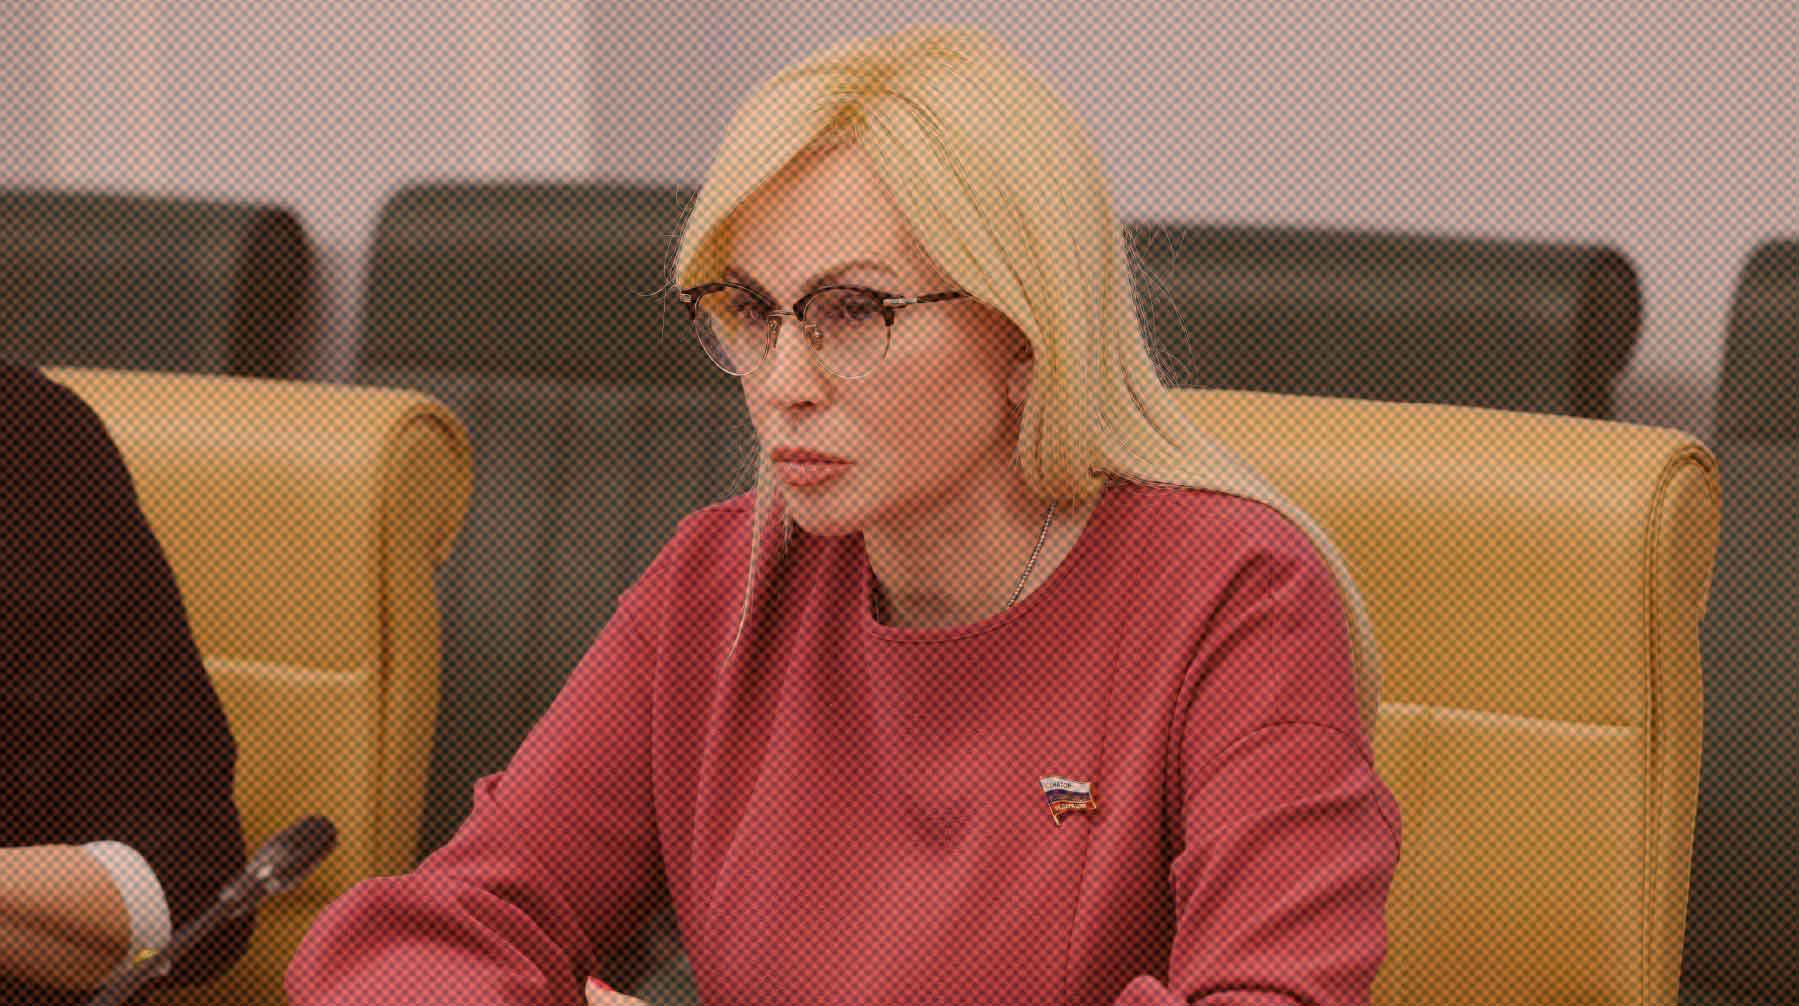 Изменения обусловлены ситуацией на фронте, отмечает политик Ольга Ковитиди